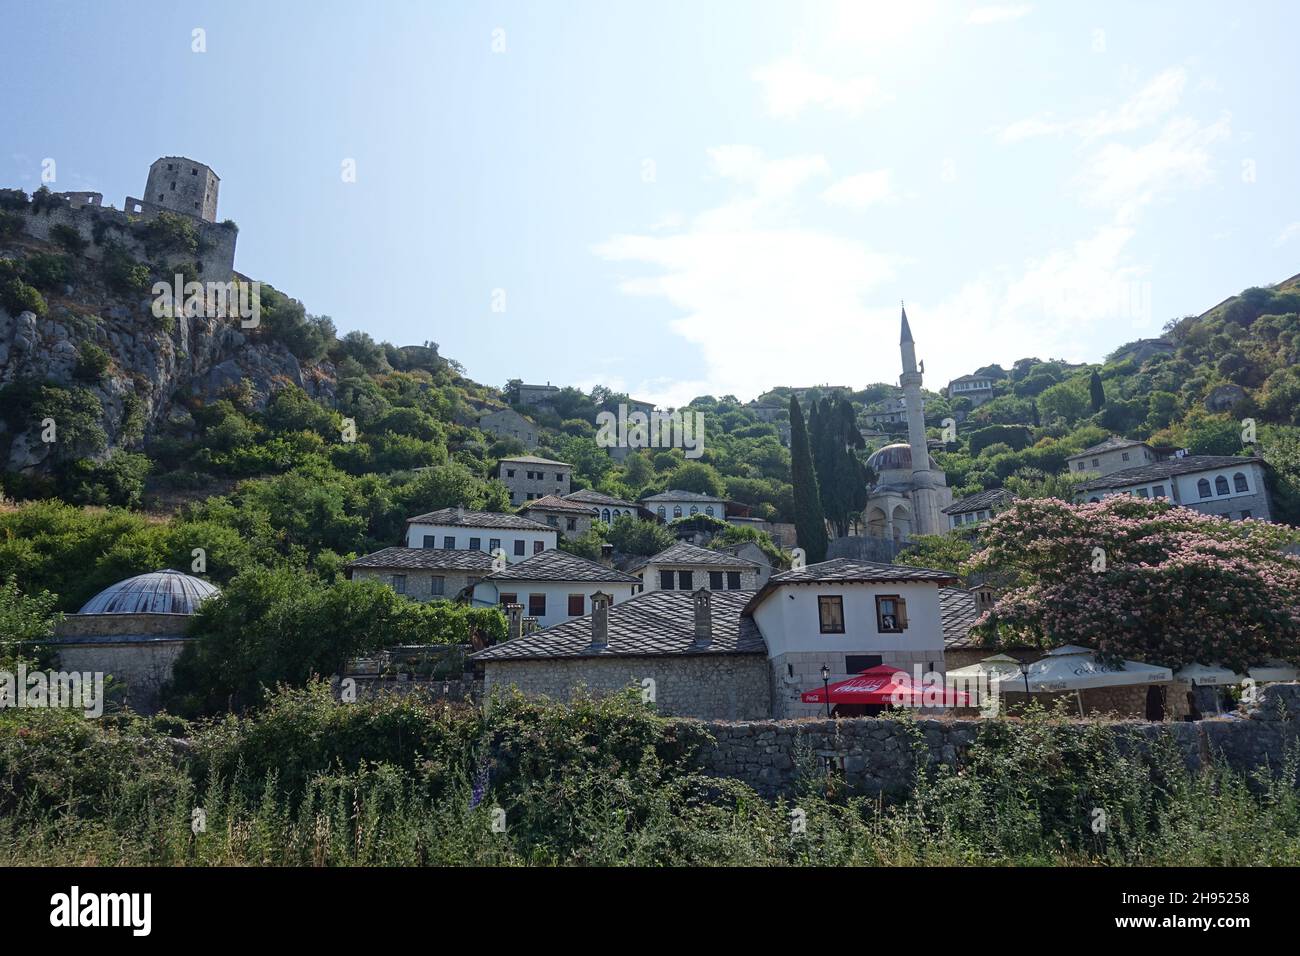 Vue fantastique sur le village musulman historique de Pocitelj, près de Mostar, avec bâtiments traditionnels à l'architecture ancienne en Bosnie-Herzégovine Banque D'Images